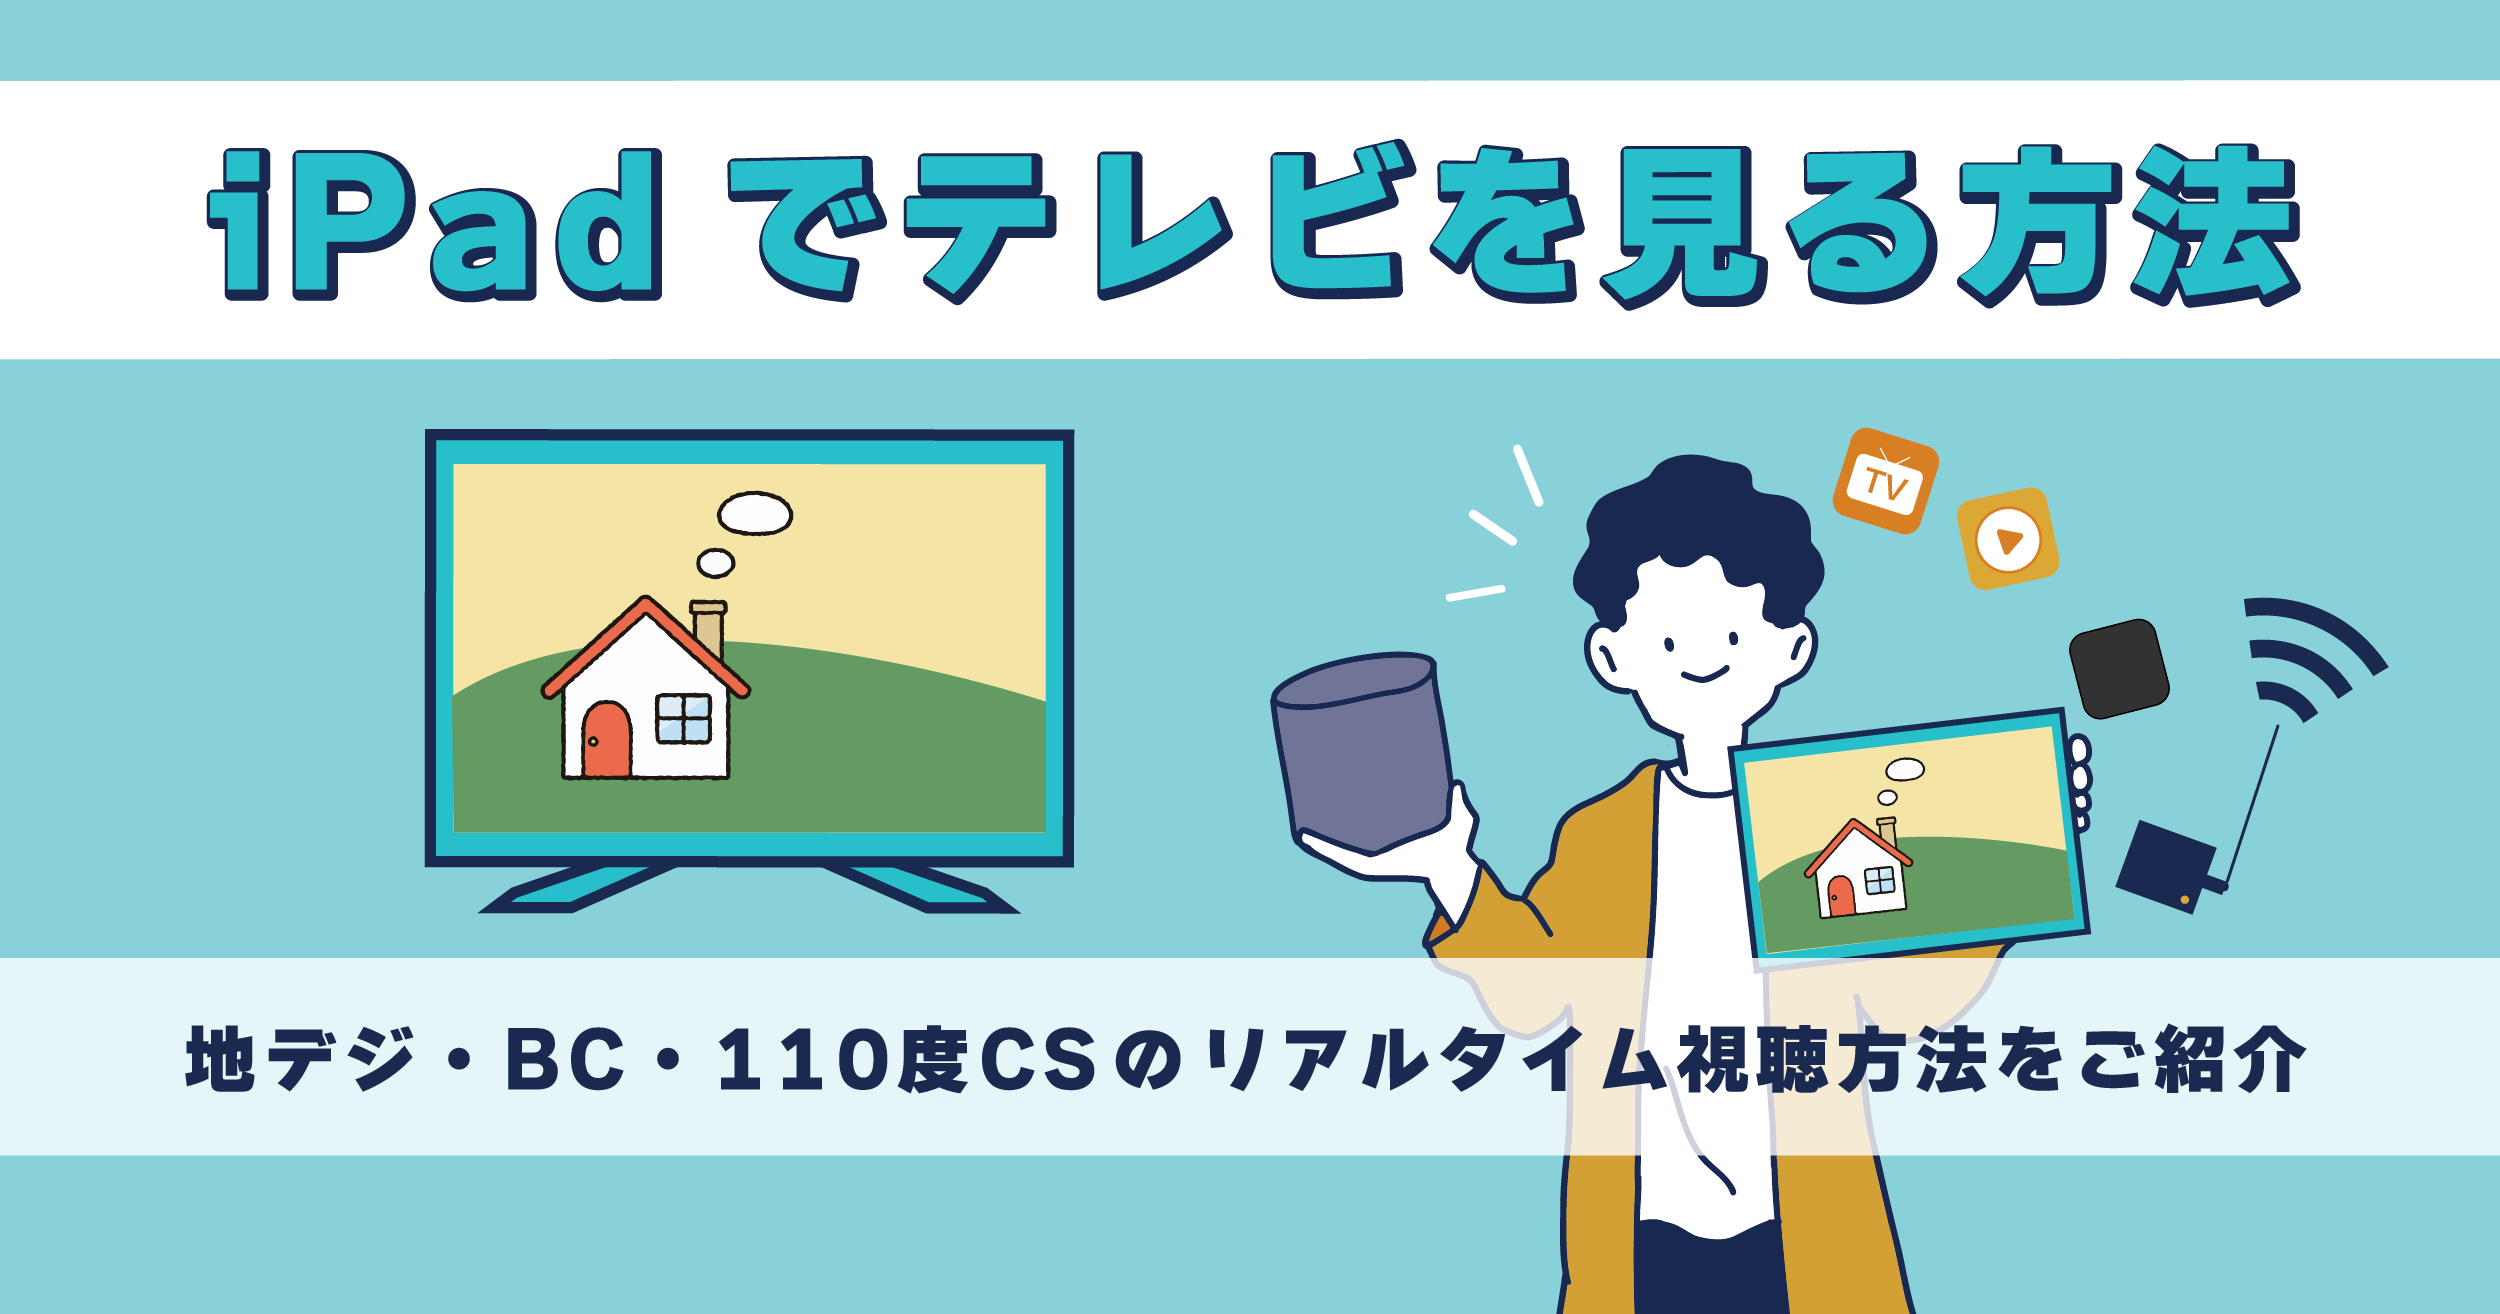 他 県 の テレビ を 見る 方法 地 デジ